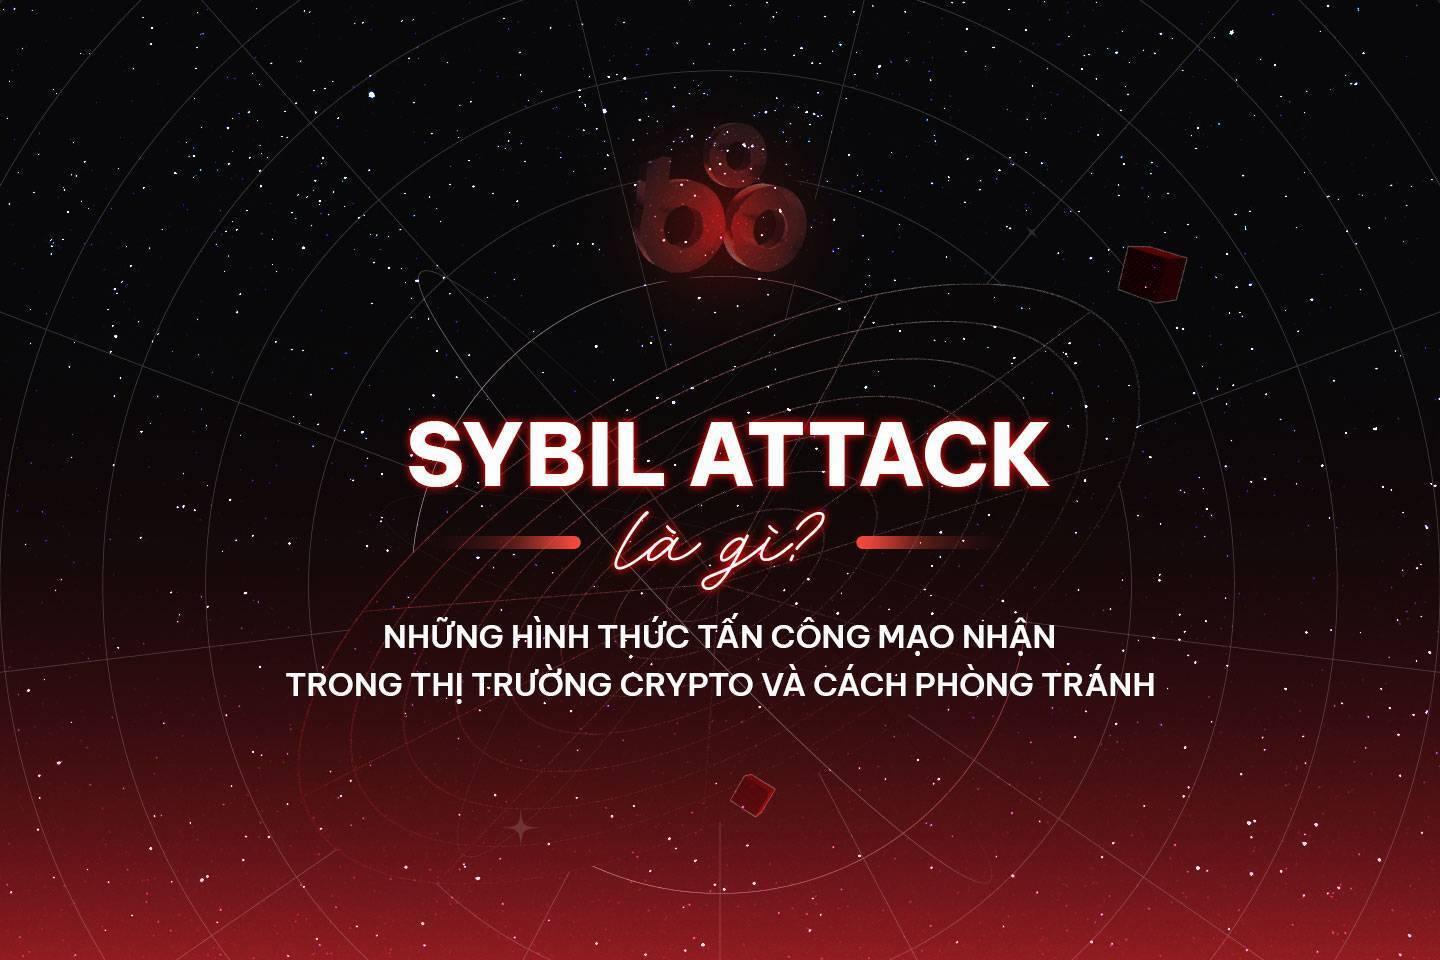 sybil-attack-la-gi-nhung-hinh-thuc-tan-cong-mao-nhan-trong-thi-truong-crypto-va-cach-phong-tranh